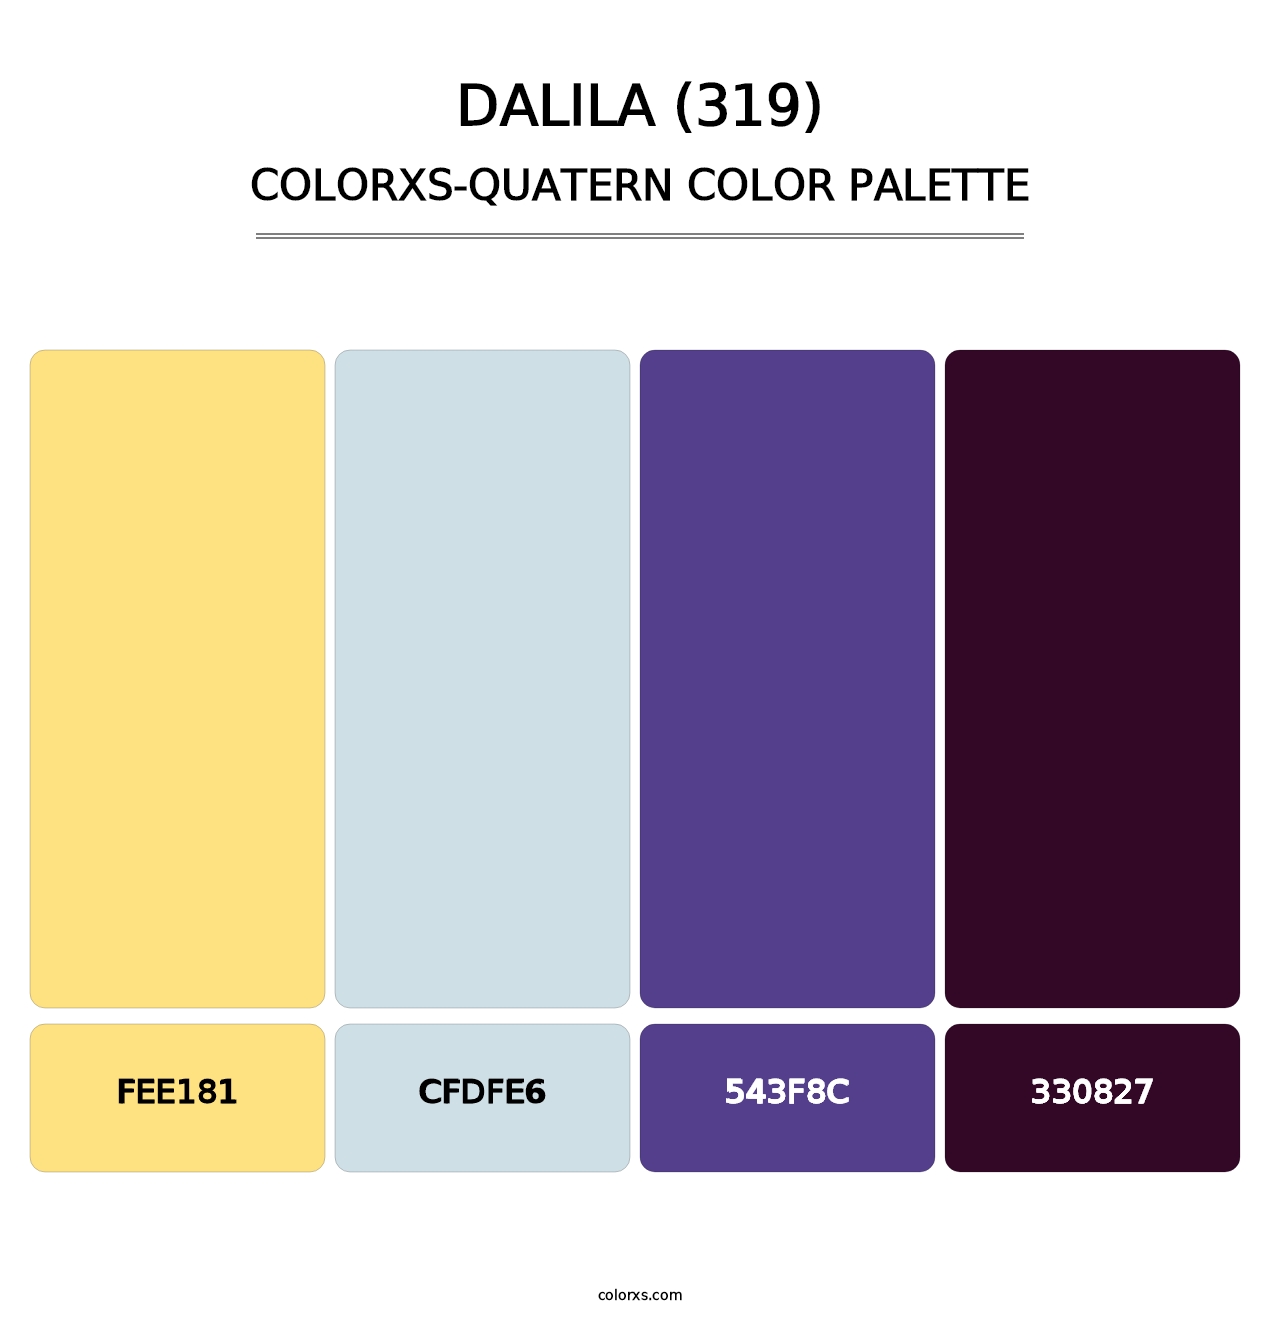 Dalila (319) - Colorxs Quatern Palette